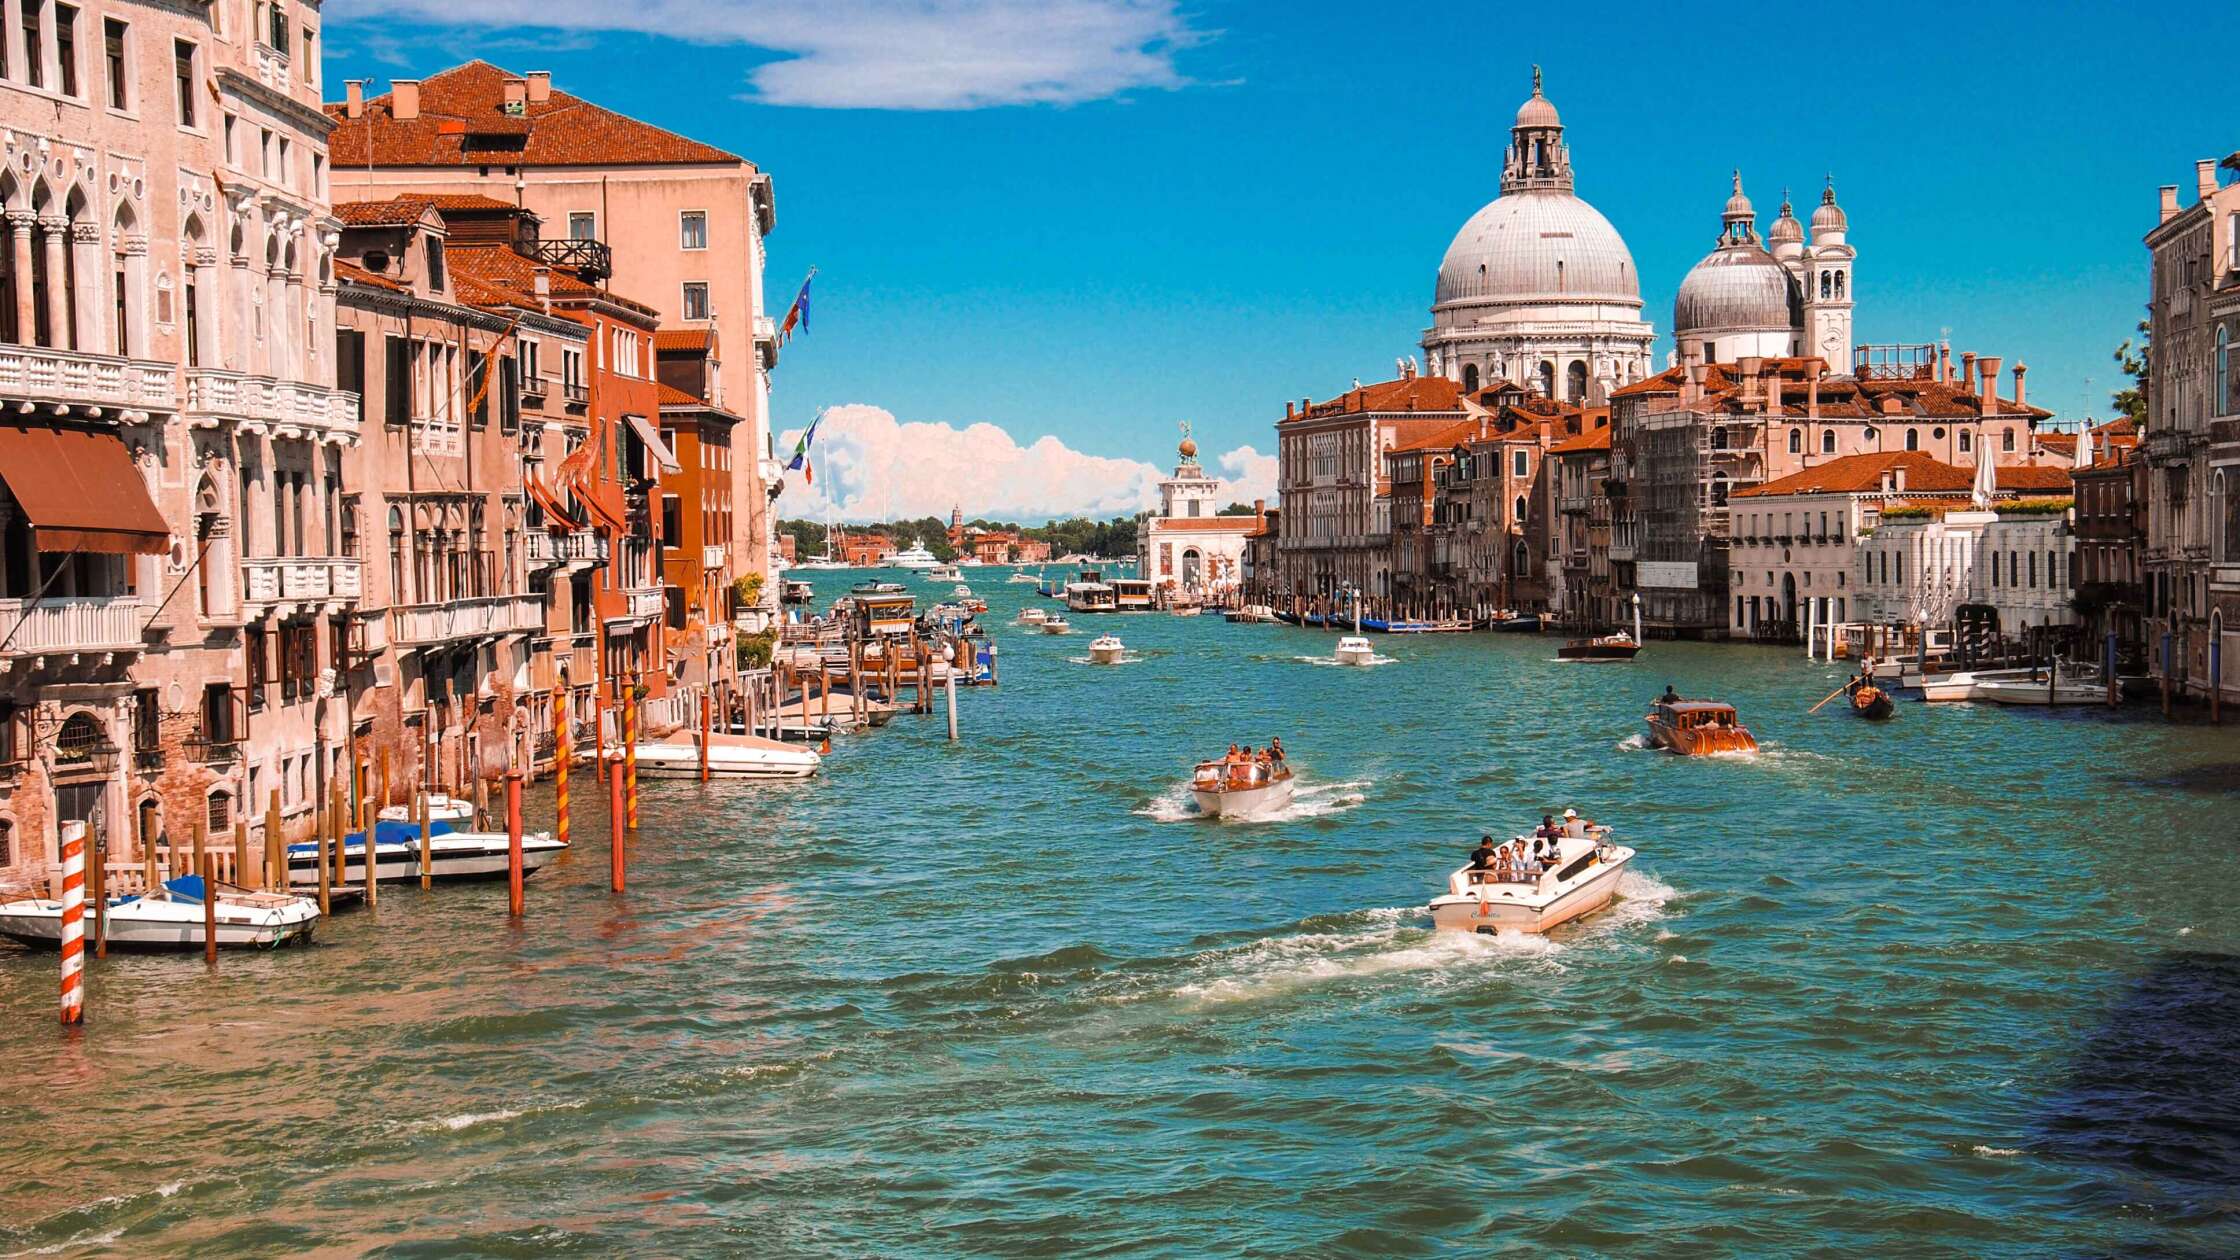 Urlaubssünden in Italien: Diese Dinge solltest du unter keinen Umständen tun